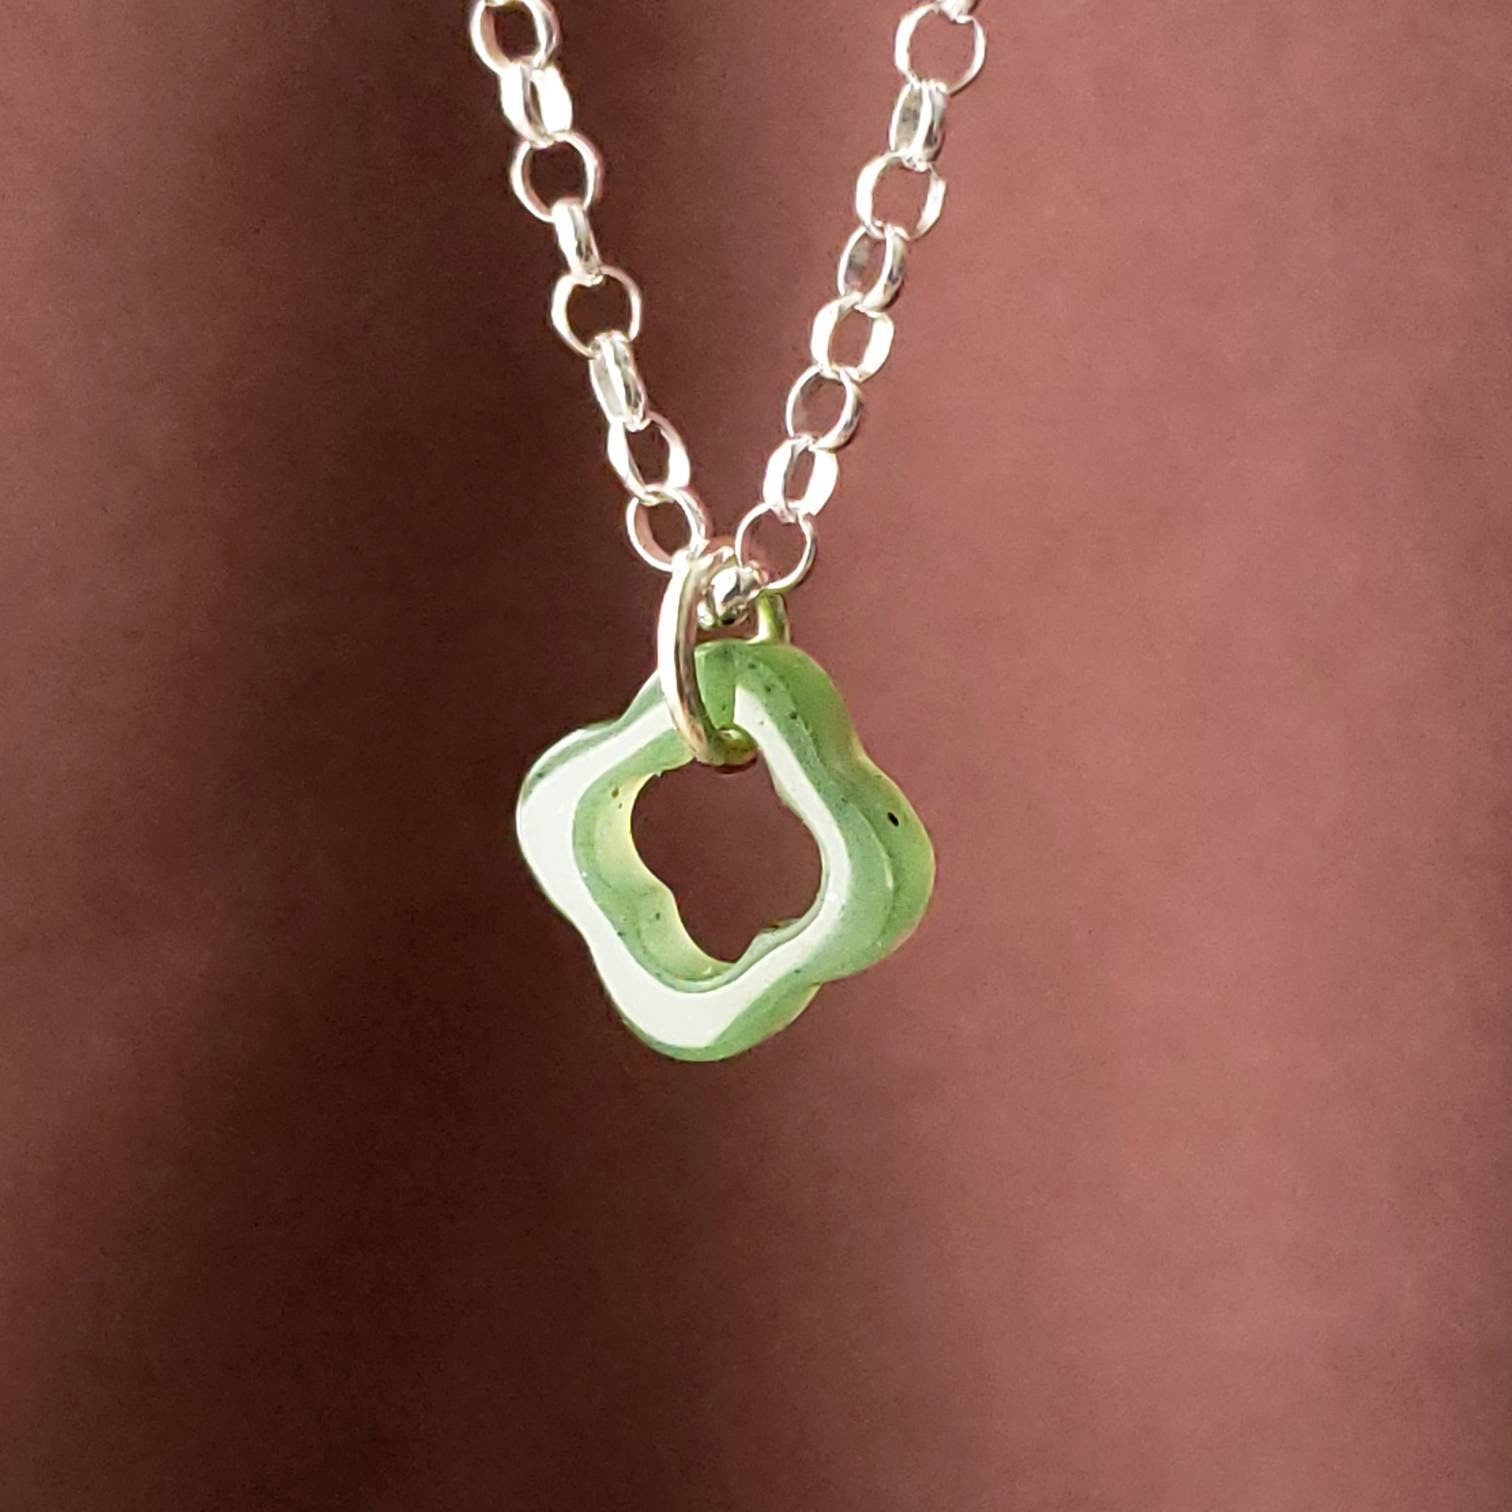 Jade floating 4 leaf clover charm pendant